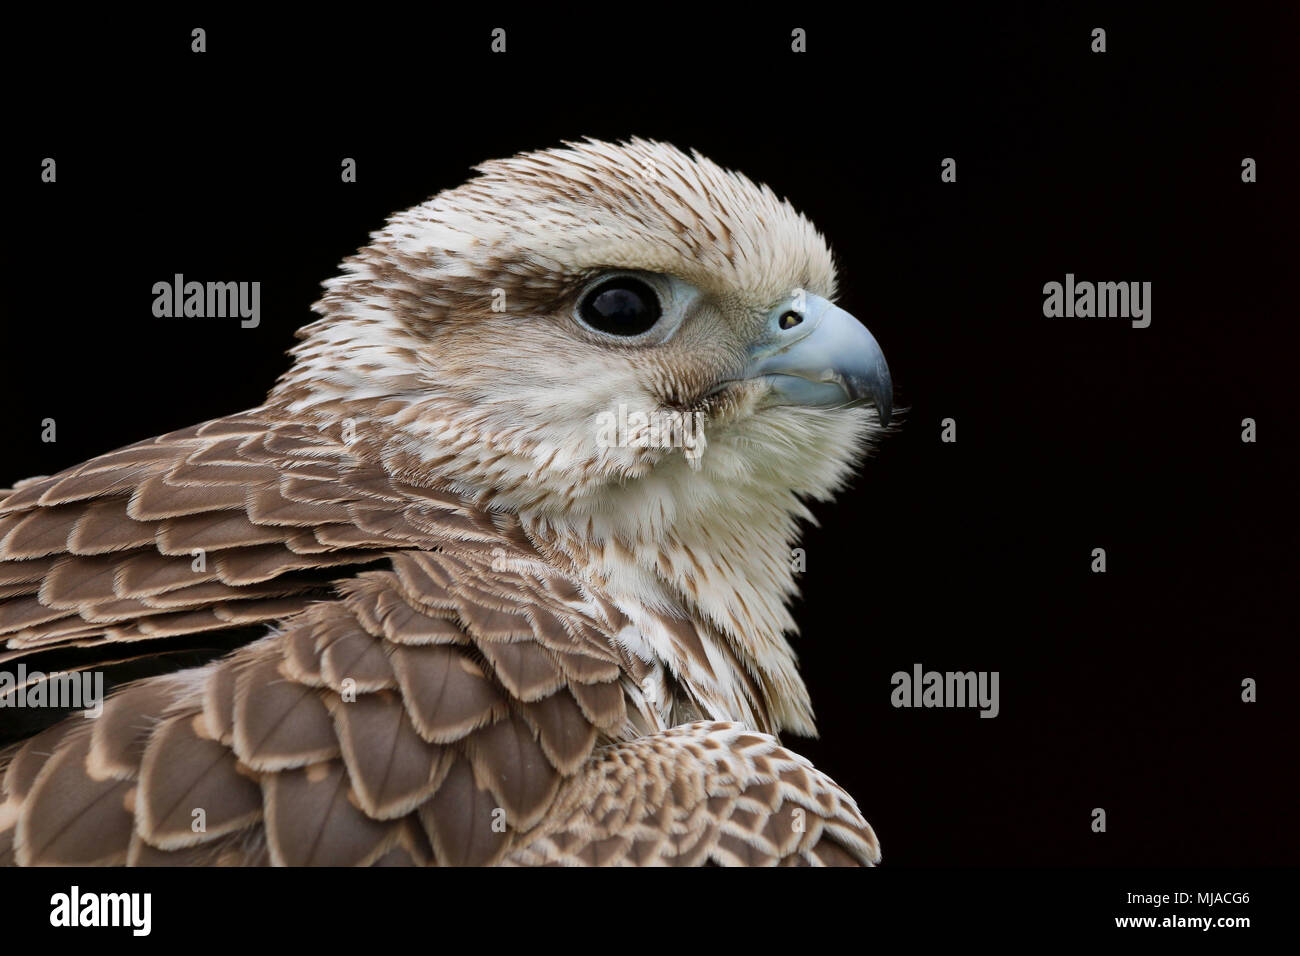 Tête portrait d'un faucon sacre (Falco cherrug) sur un fond noir Banque D'Images